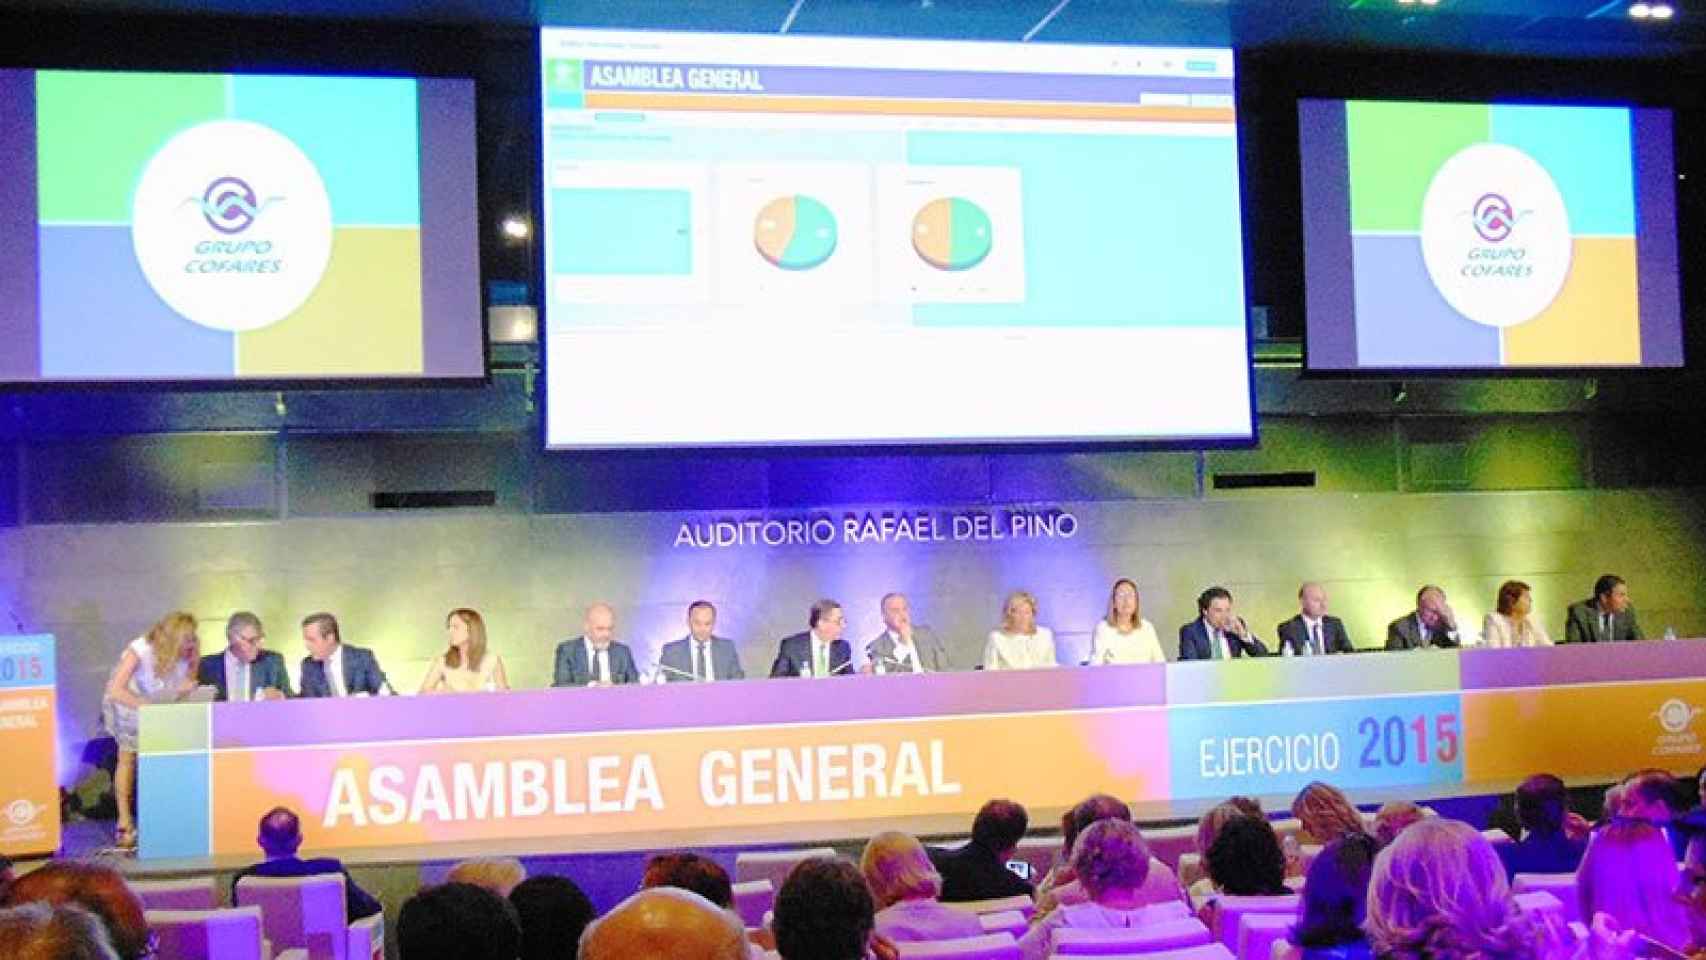 Asamblea general del Grupo Cofares, celebrada este jueves en Madrid.